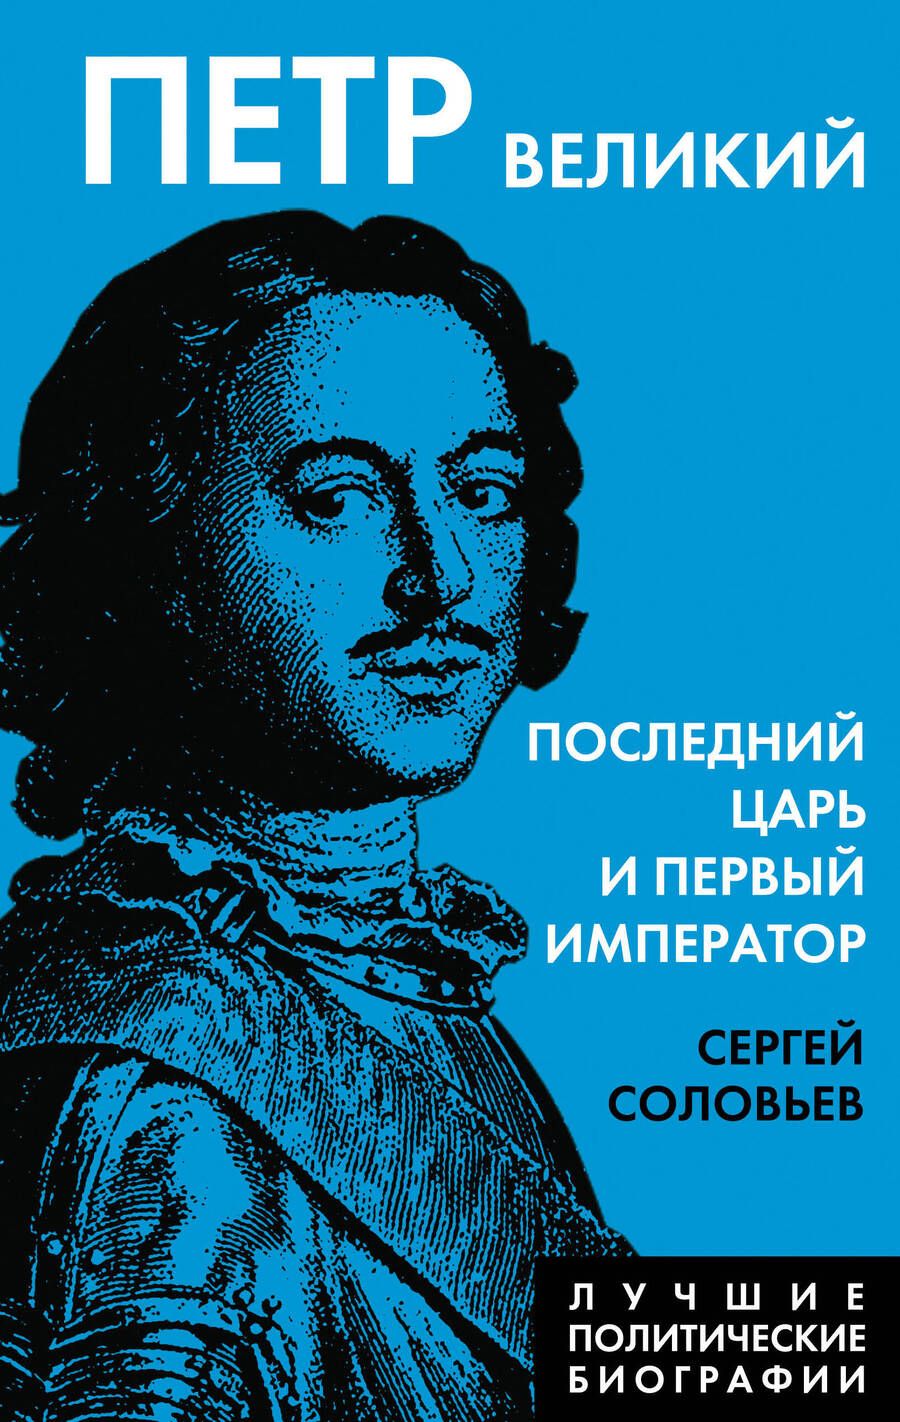 Обложка книги "Соловьев: Петр Великий. Последний царь и первый император"